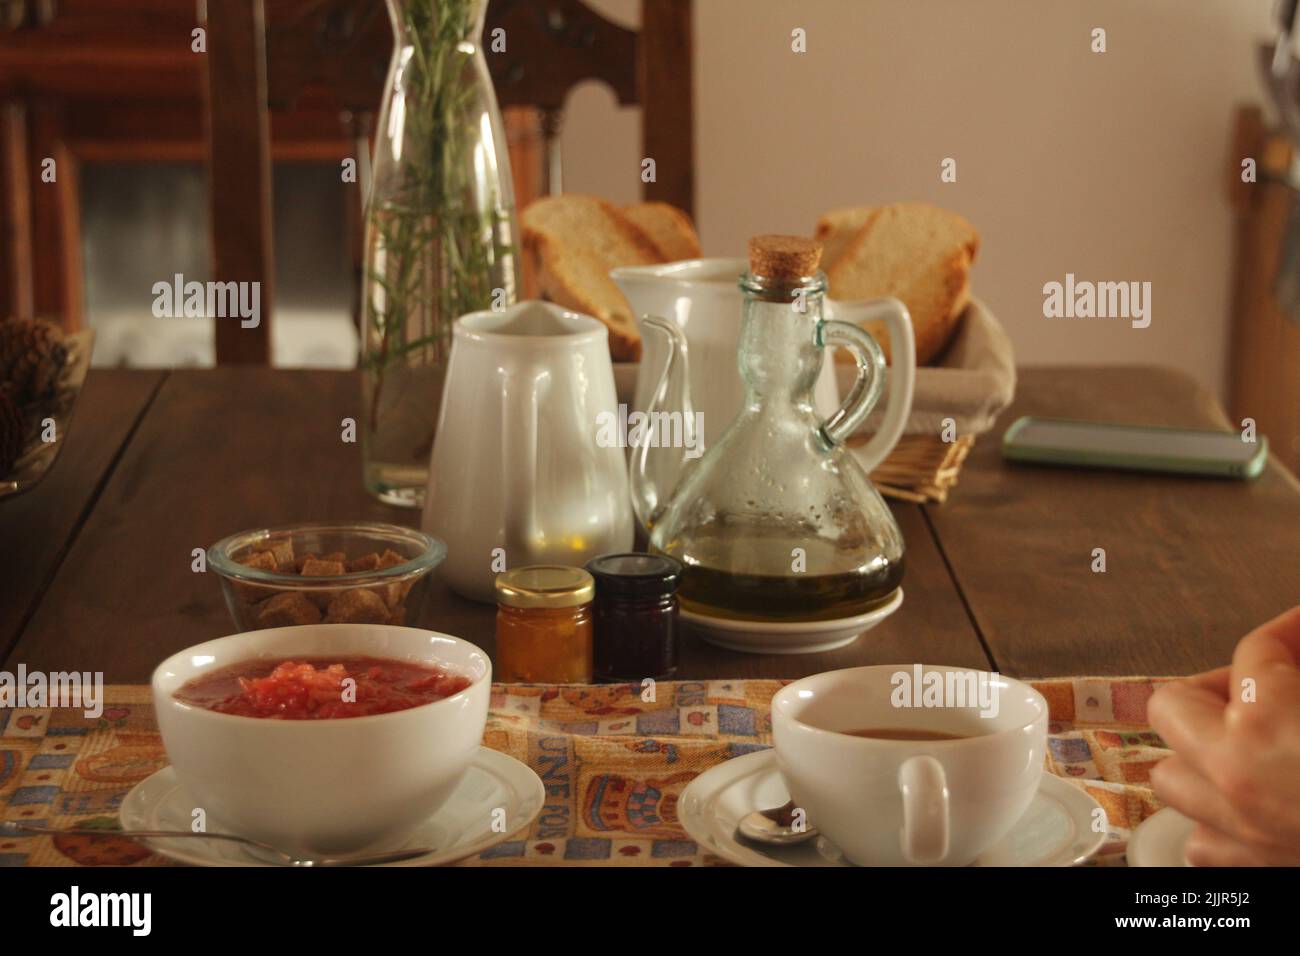 Ein Holztisch mit Tassen, Teekannen, Brot, einem Telefon und anderen Zutaten darauf Stockfoto